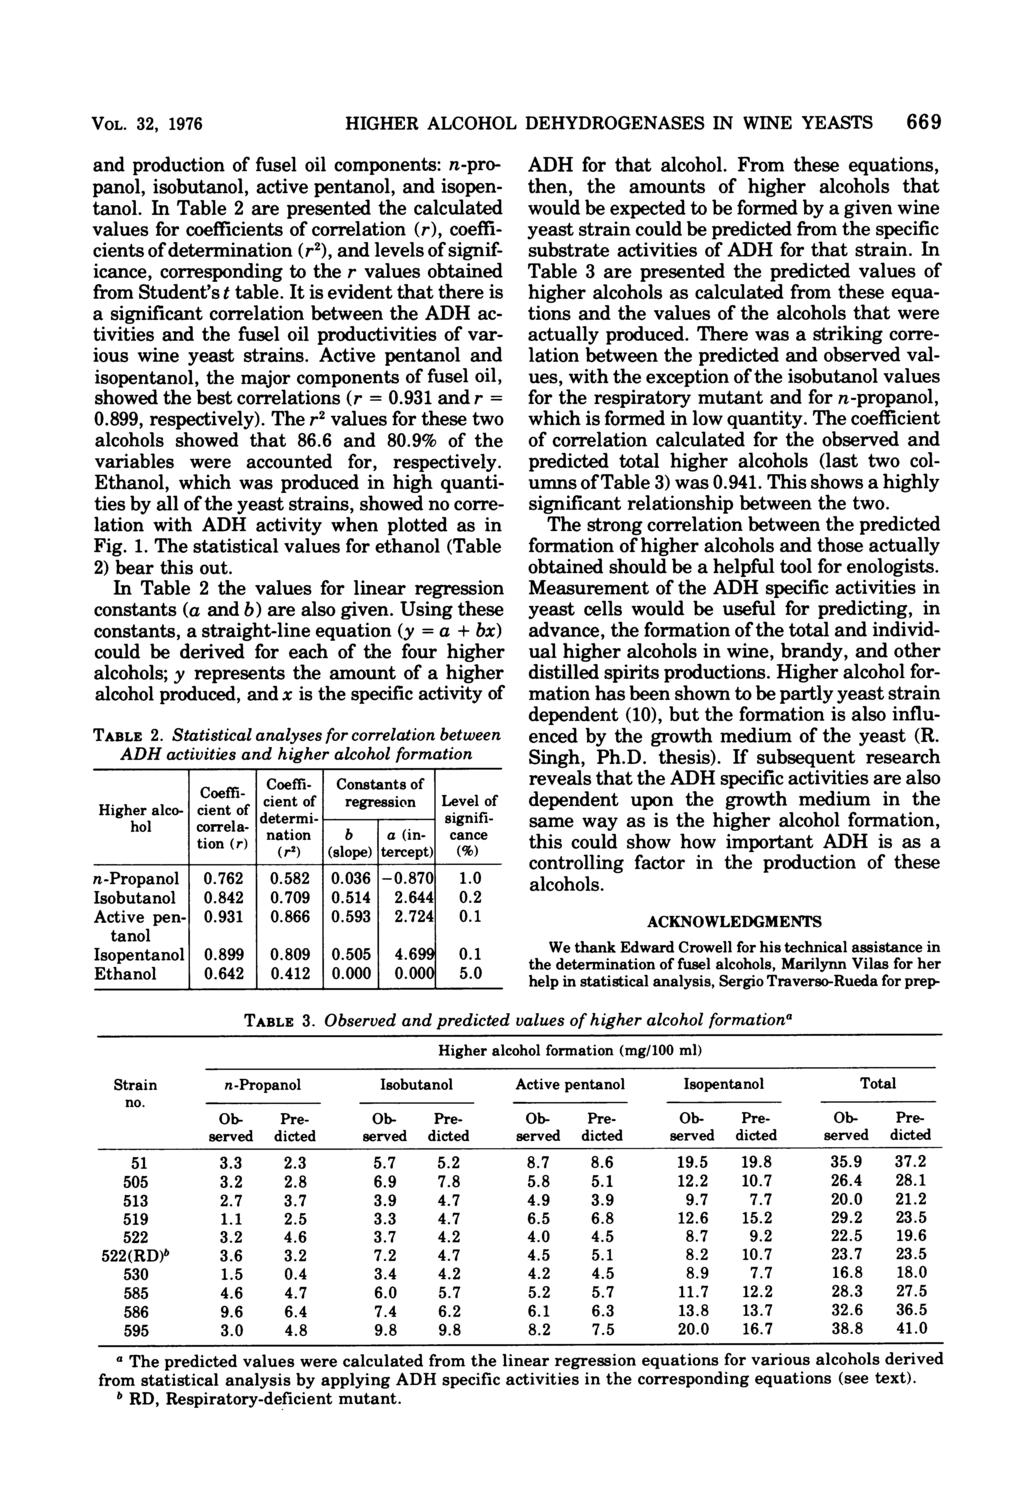 VOL. 32, 1976 nd production of fusel oil components: n-propnol, isobutnol, ctive pentnol, nd isopentnol.